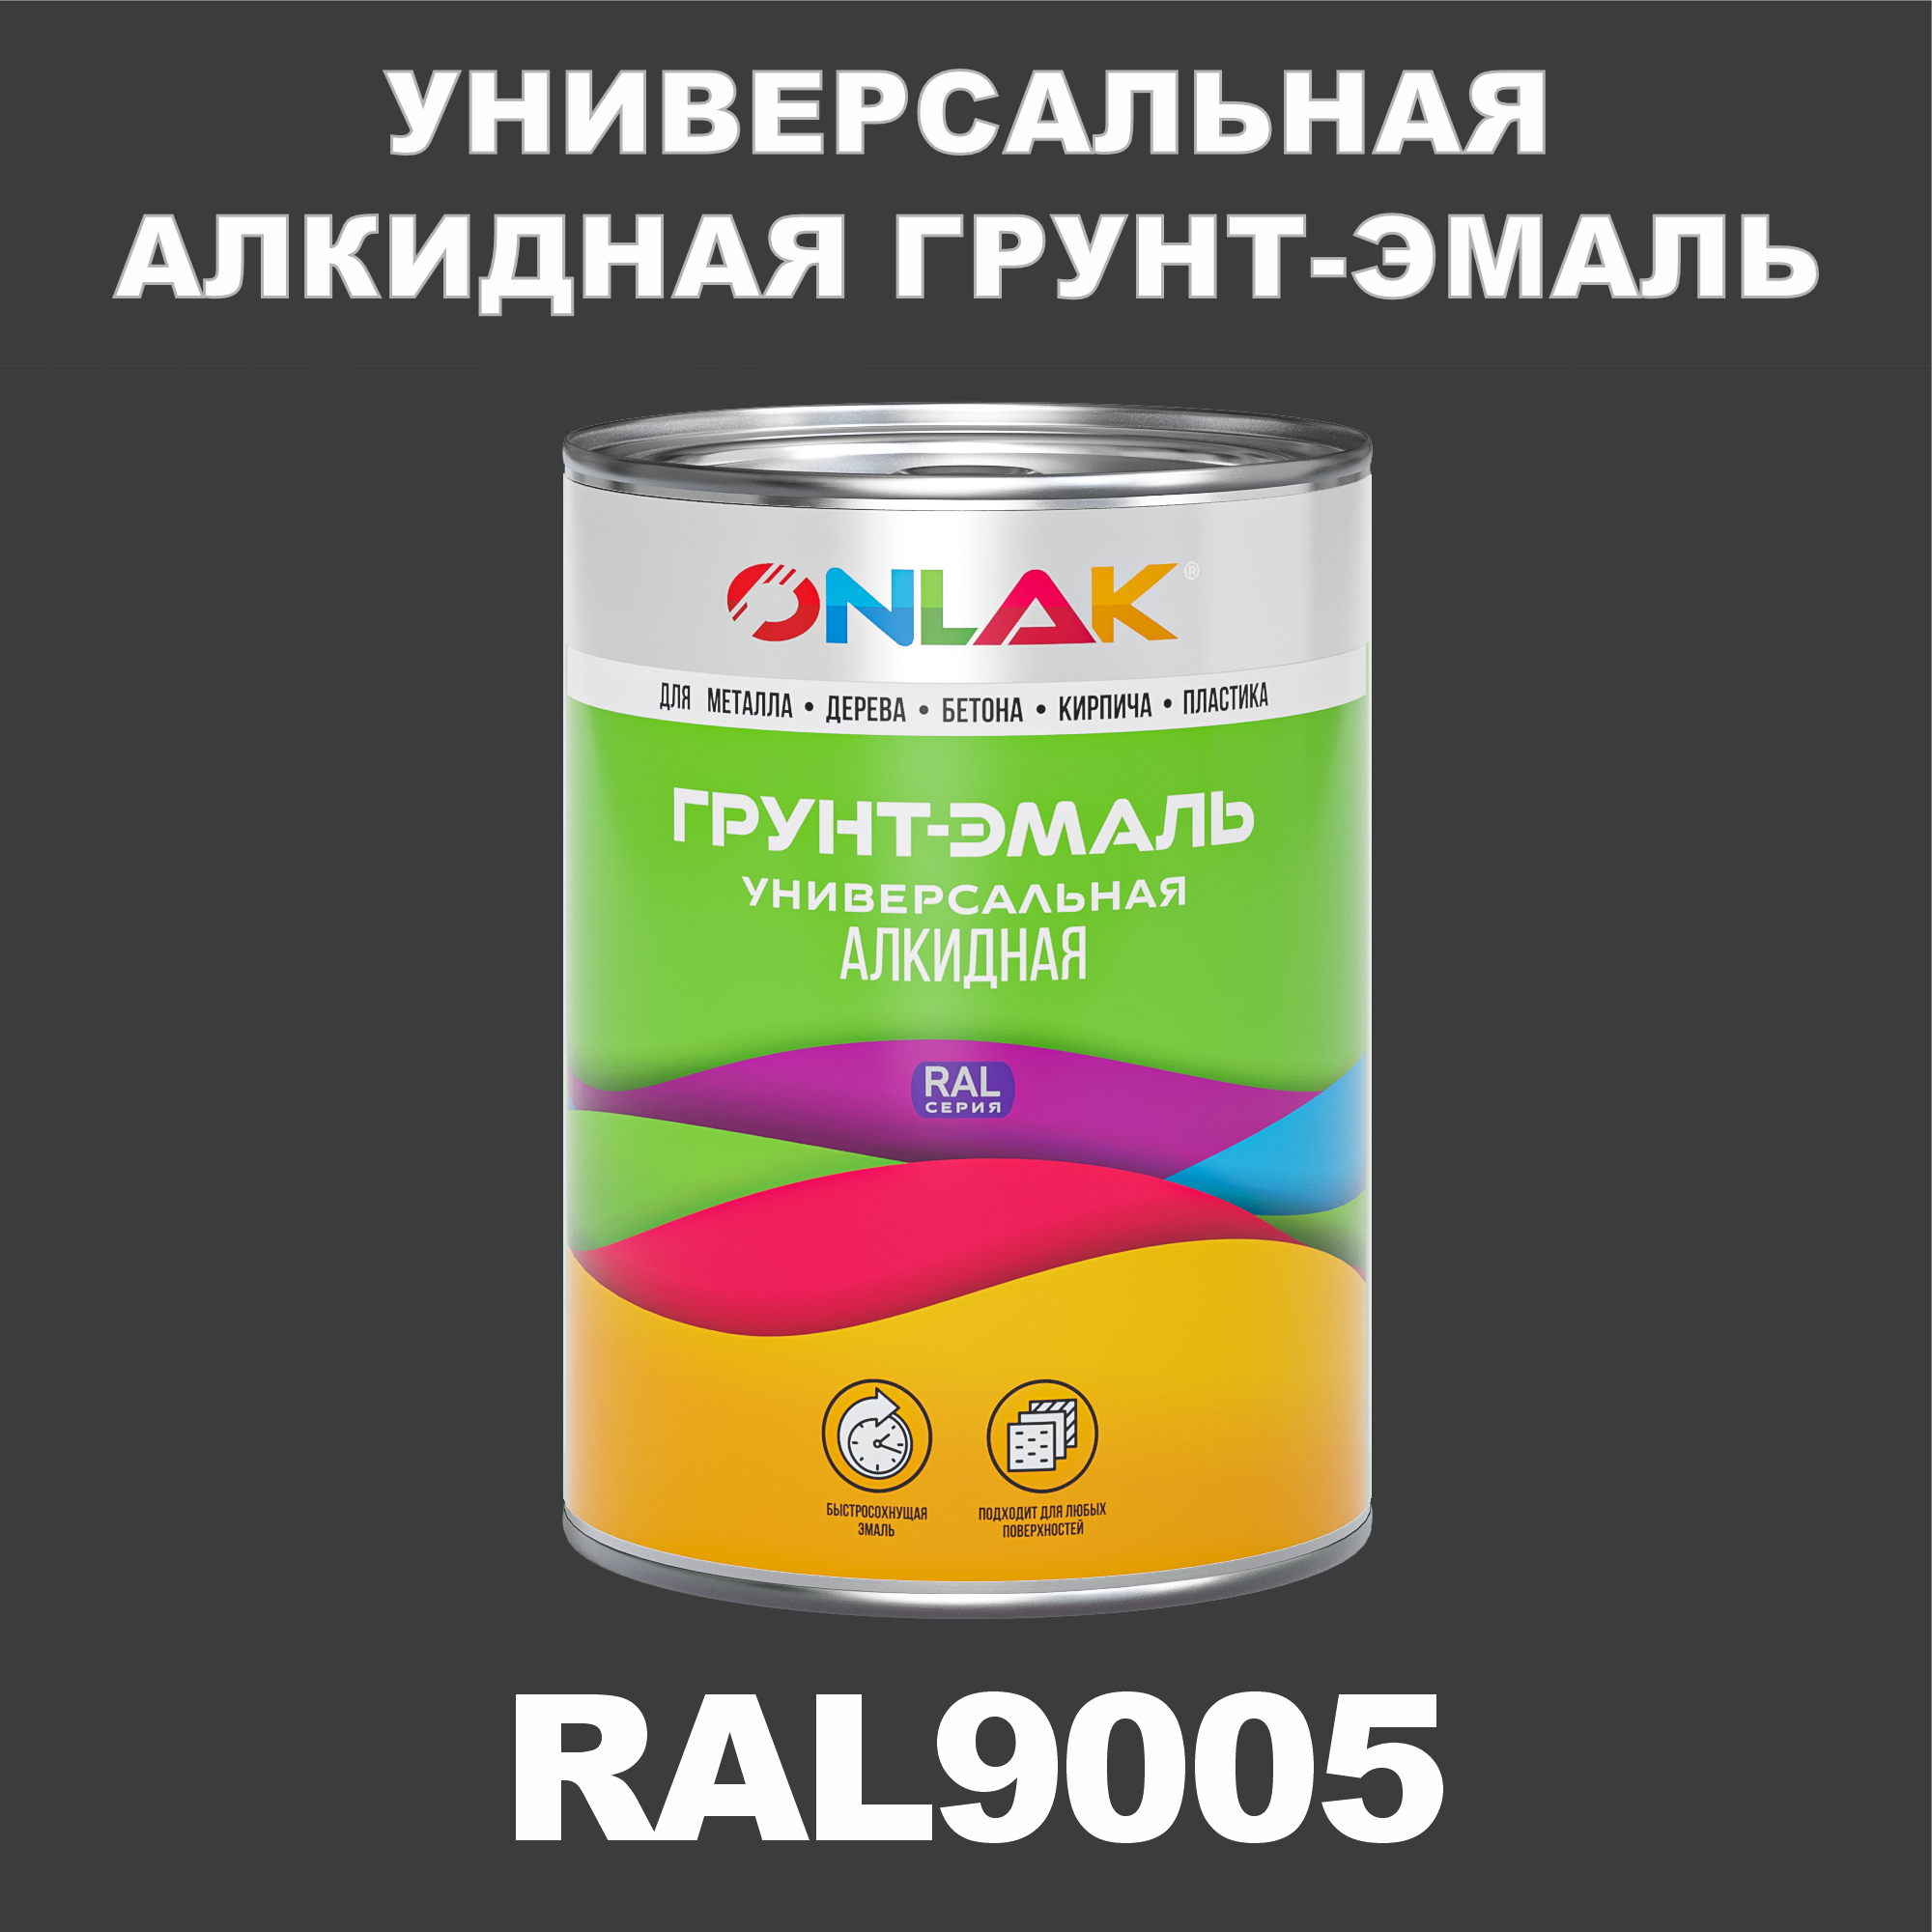 Грунт-эмаль ONLAK 1К RAL9005 антикоррозионная алкидная по металлу по ржавчине 1 кг